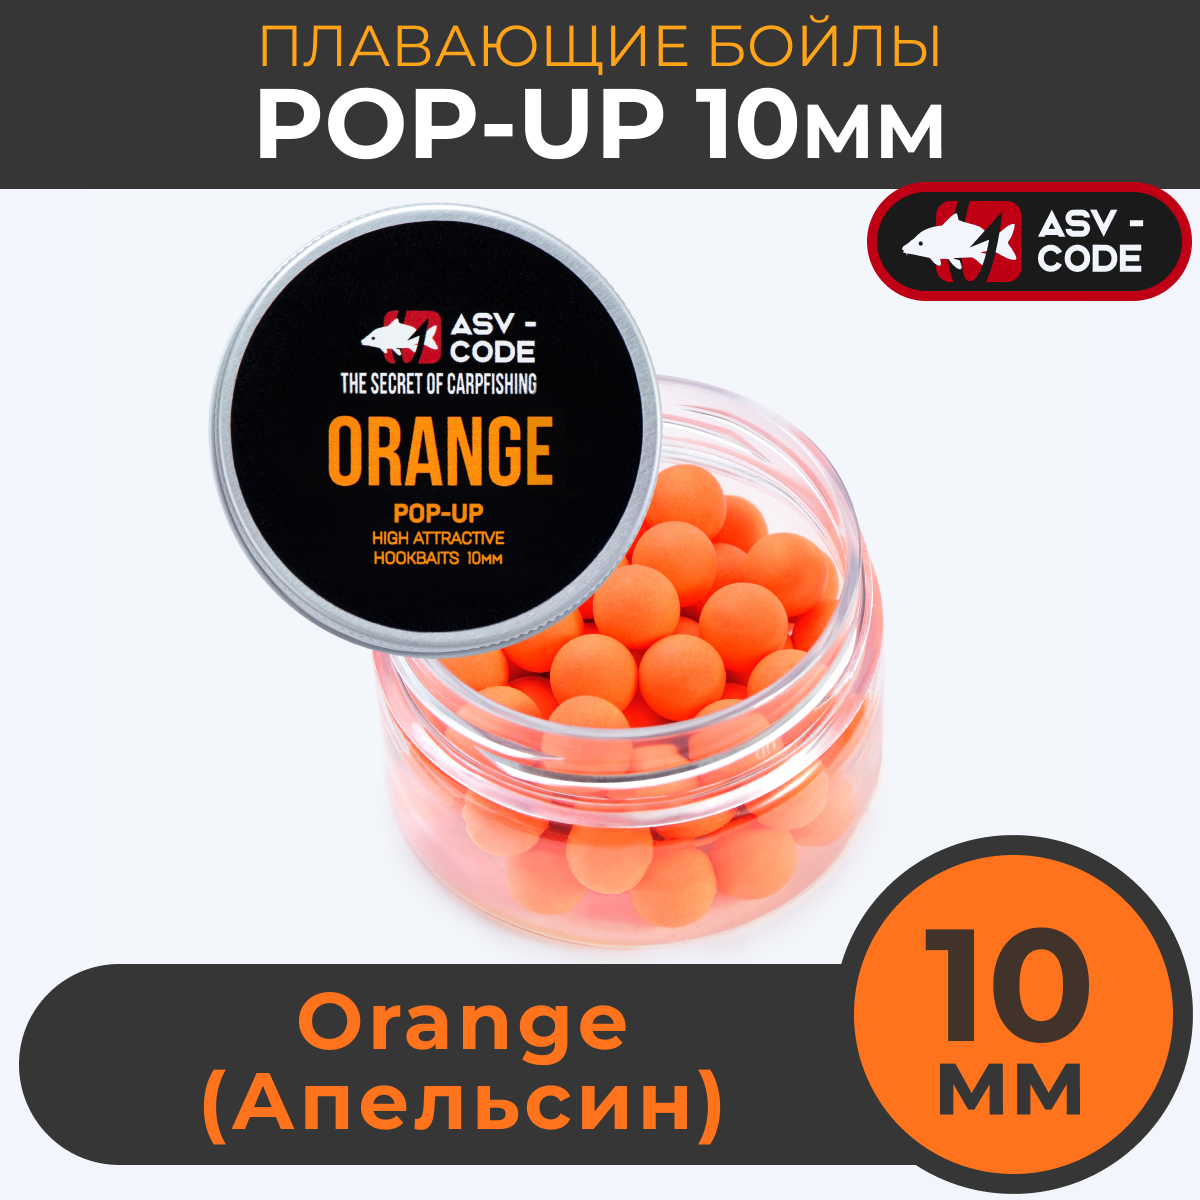 Плавающие бойлы ASV-CODE POP-UP 10 мм Orange (Цитрус)